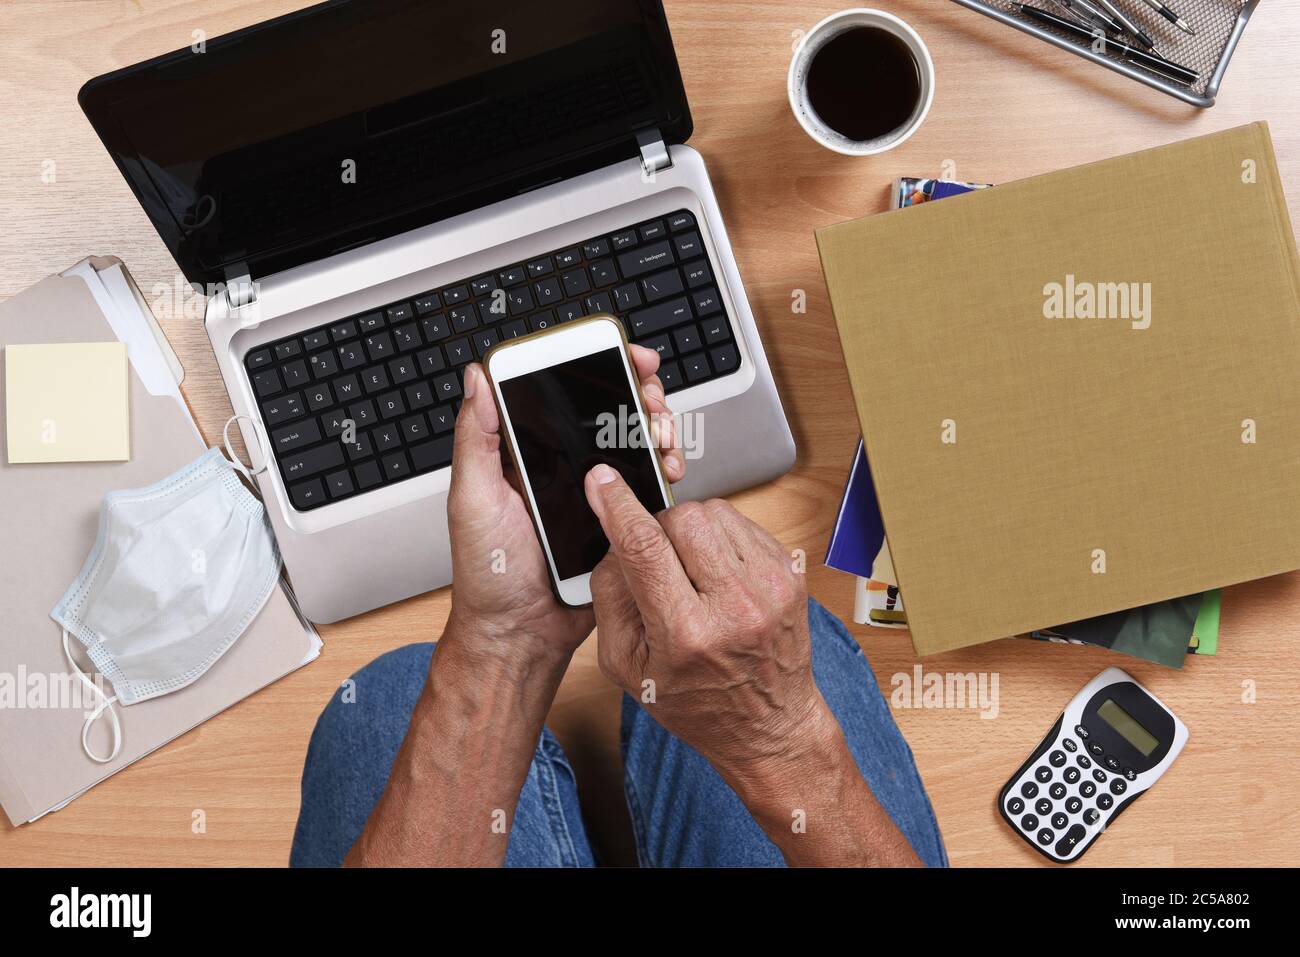 Mann, der auf dem Boden kniet und von zu Hause aus mit seinem Laptop arbeitet Handy, Bücher, Kaffee und andere Gegenstände, um während des COVID-19 zu Hause zu bleiben Stockfoto